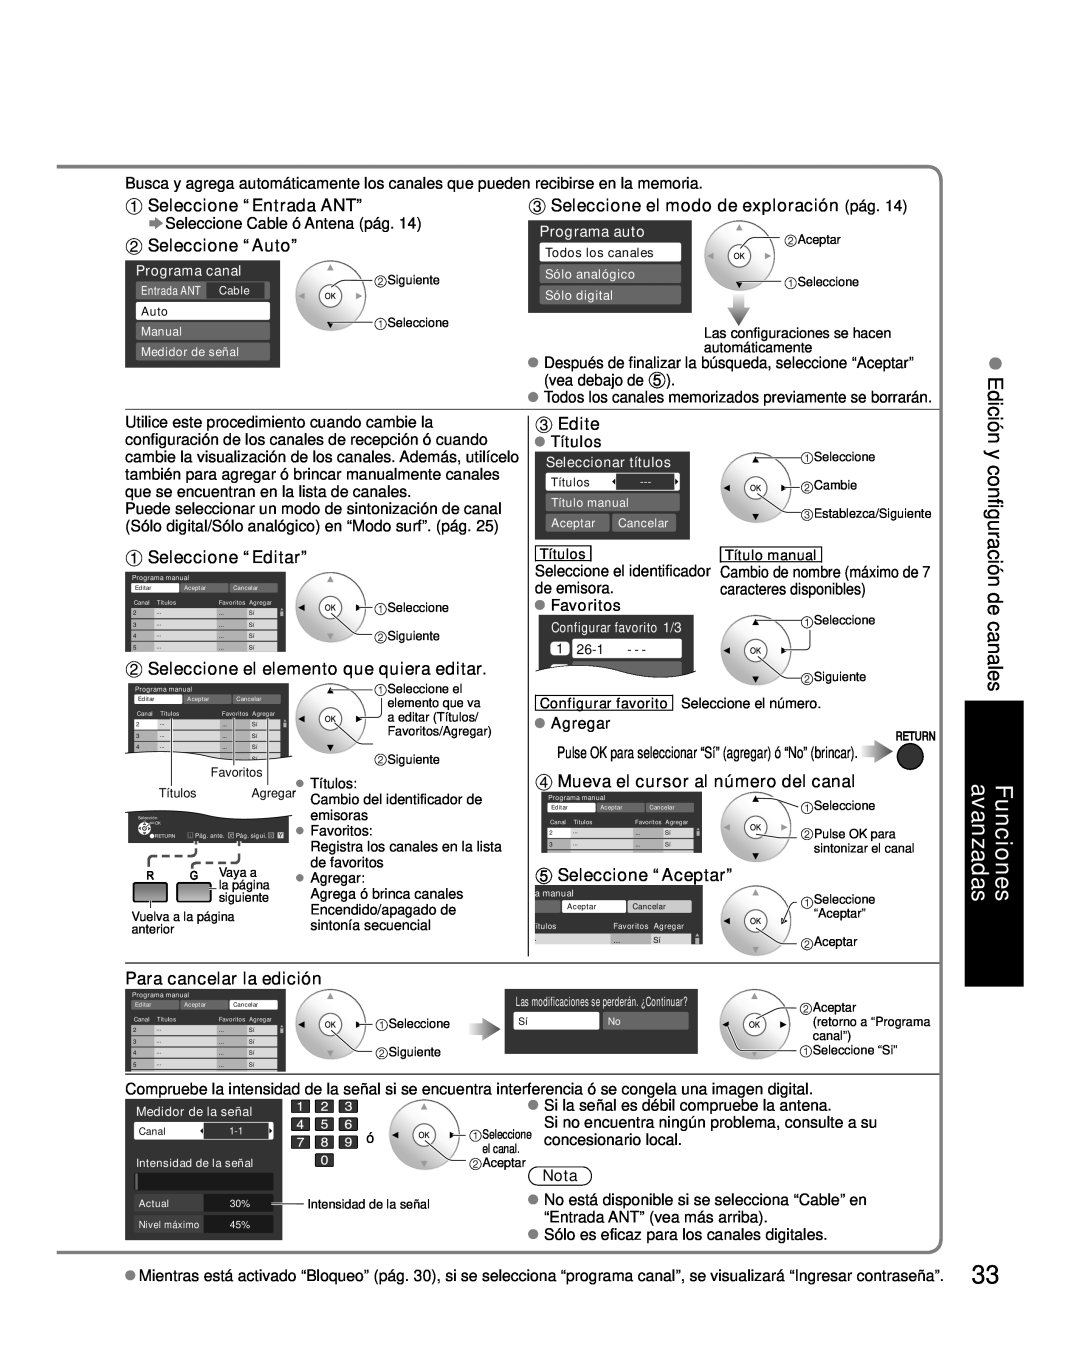 Panasonic TC-26LX85 Seleccione el modo de exploración pág, Seleccione “Editar”, Seleccione el elemento que quiera editar 